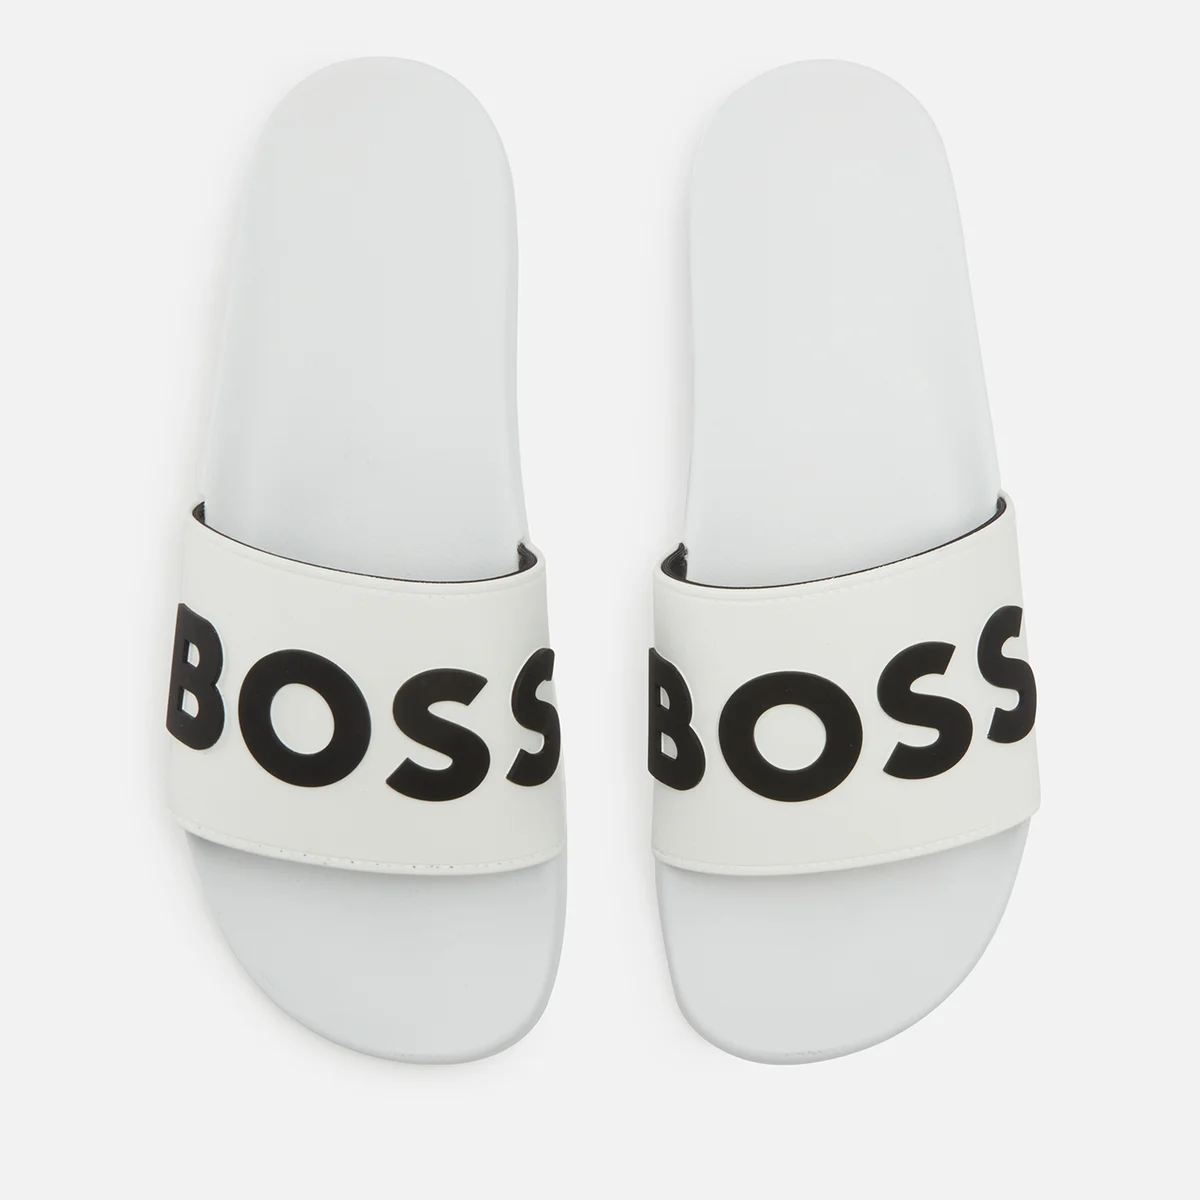 Boss Kirk Men's Rubber Slide Sandals Image 1